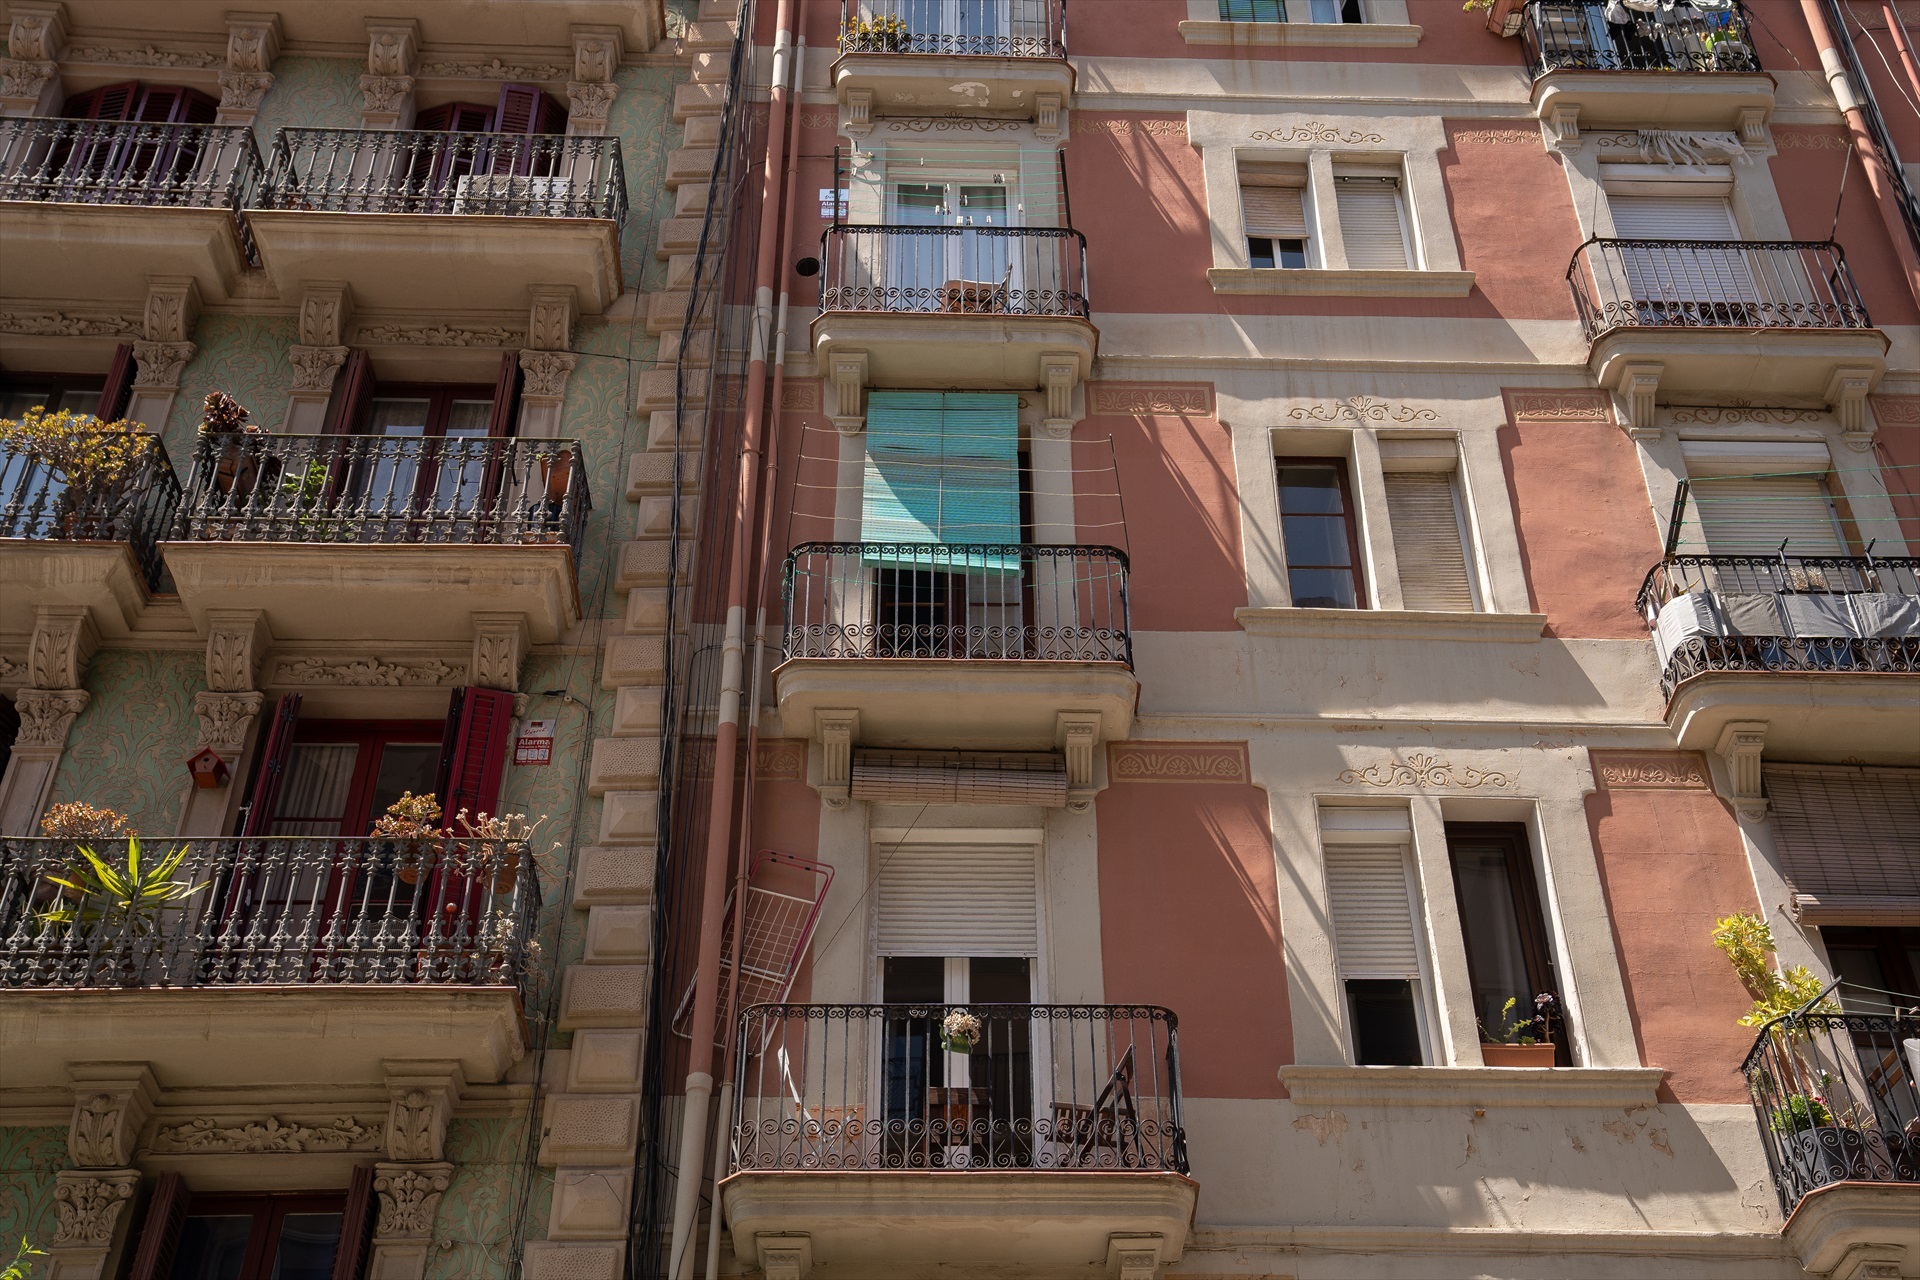 EuropaPress 5205408 fachada edificio viviendas 17 mayo 2023 barcelona cataluna espana despues